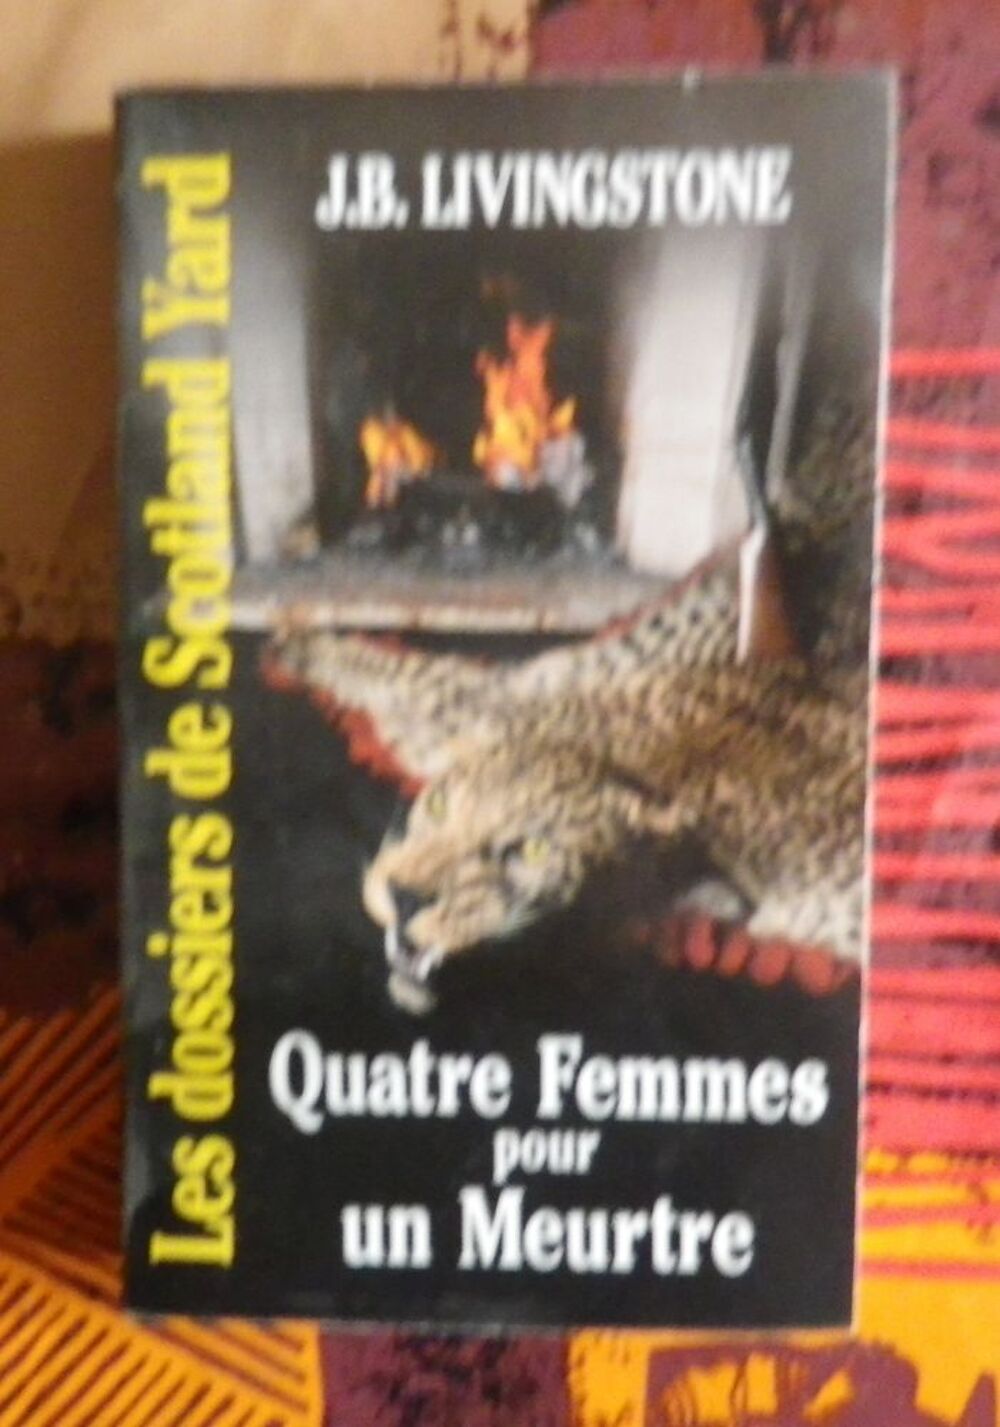 QUATRE FEMMES POUR UN MEURTRE N&deg;16 de J.B. LIVINGSTONE
Livres et BD